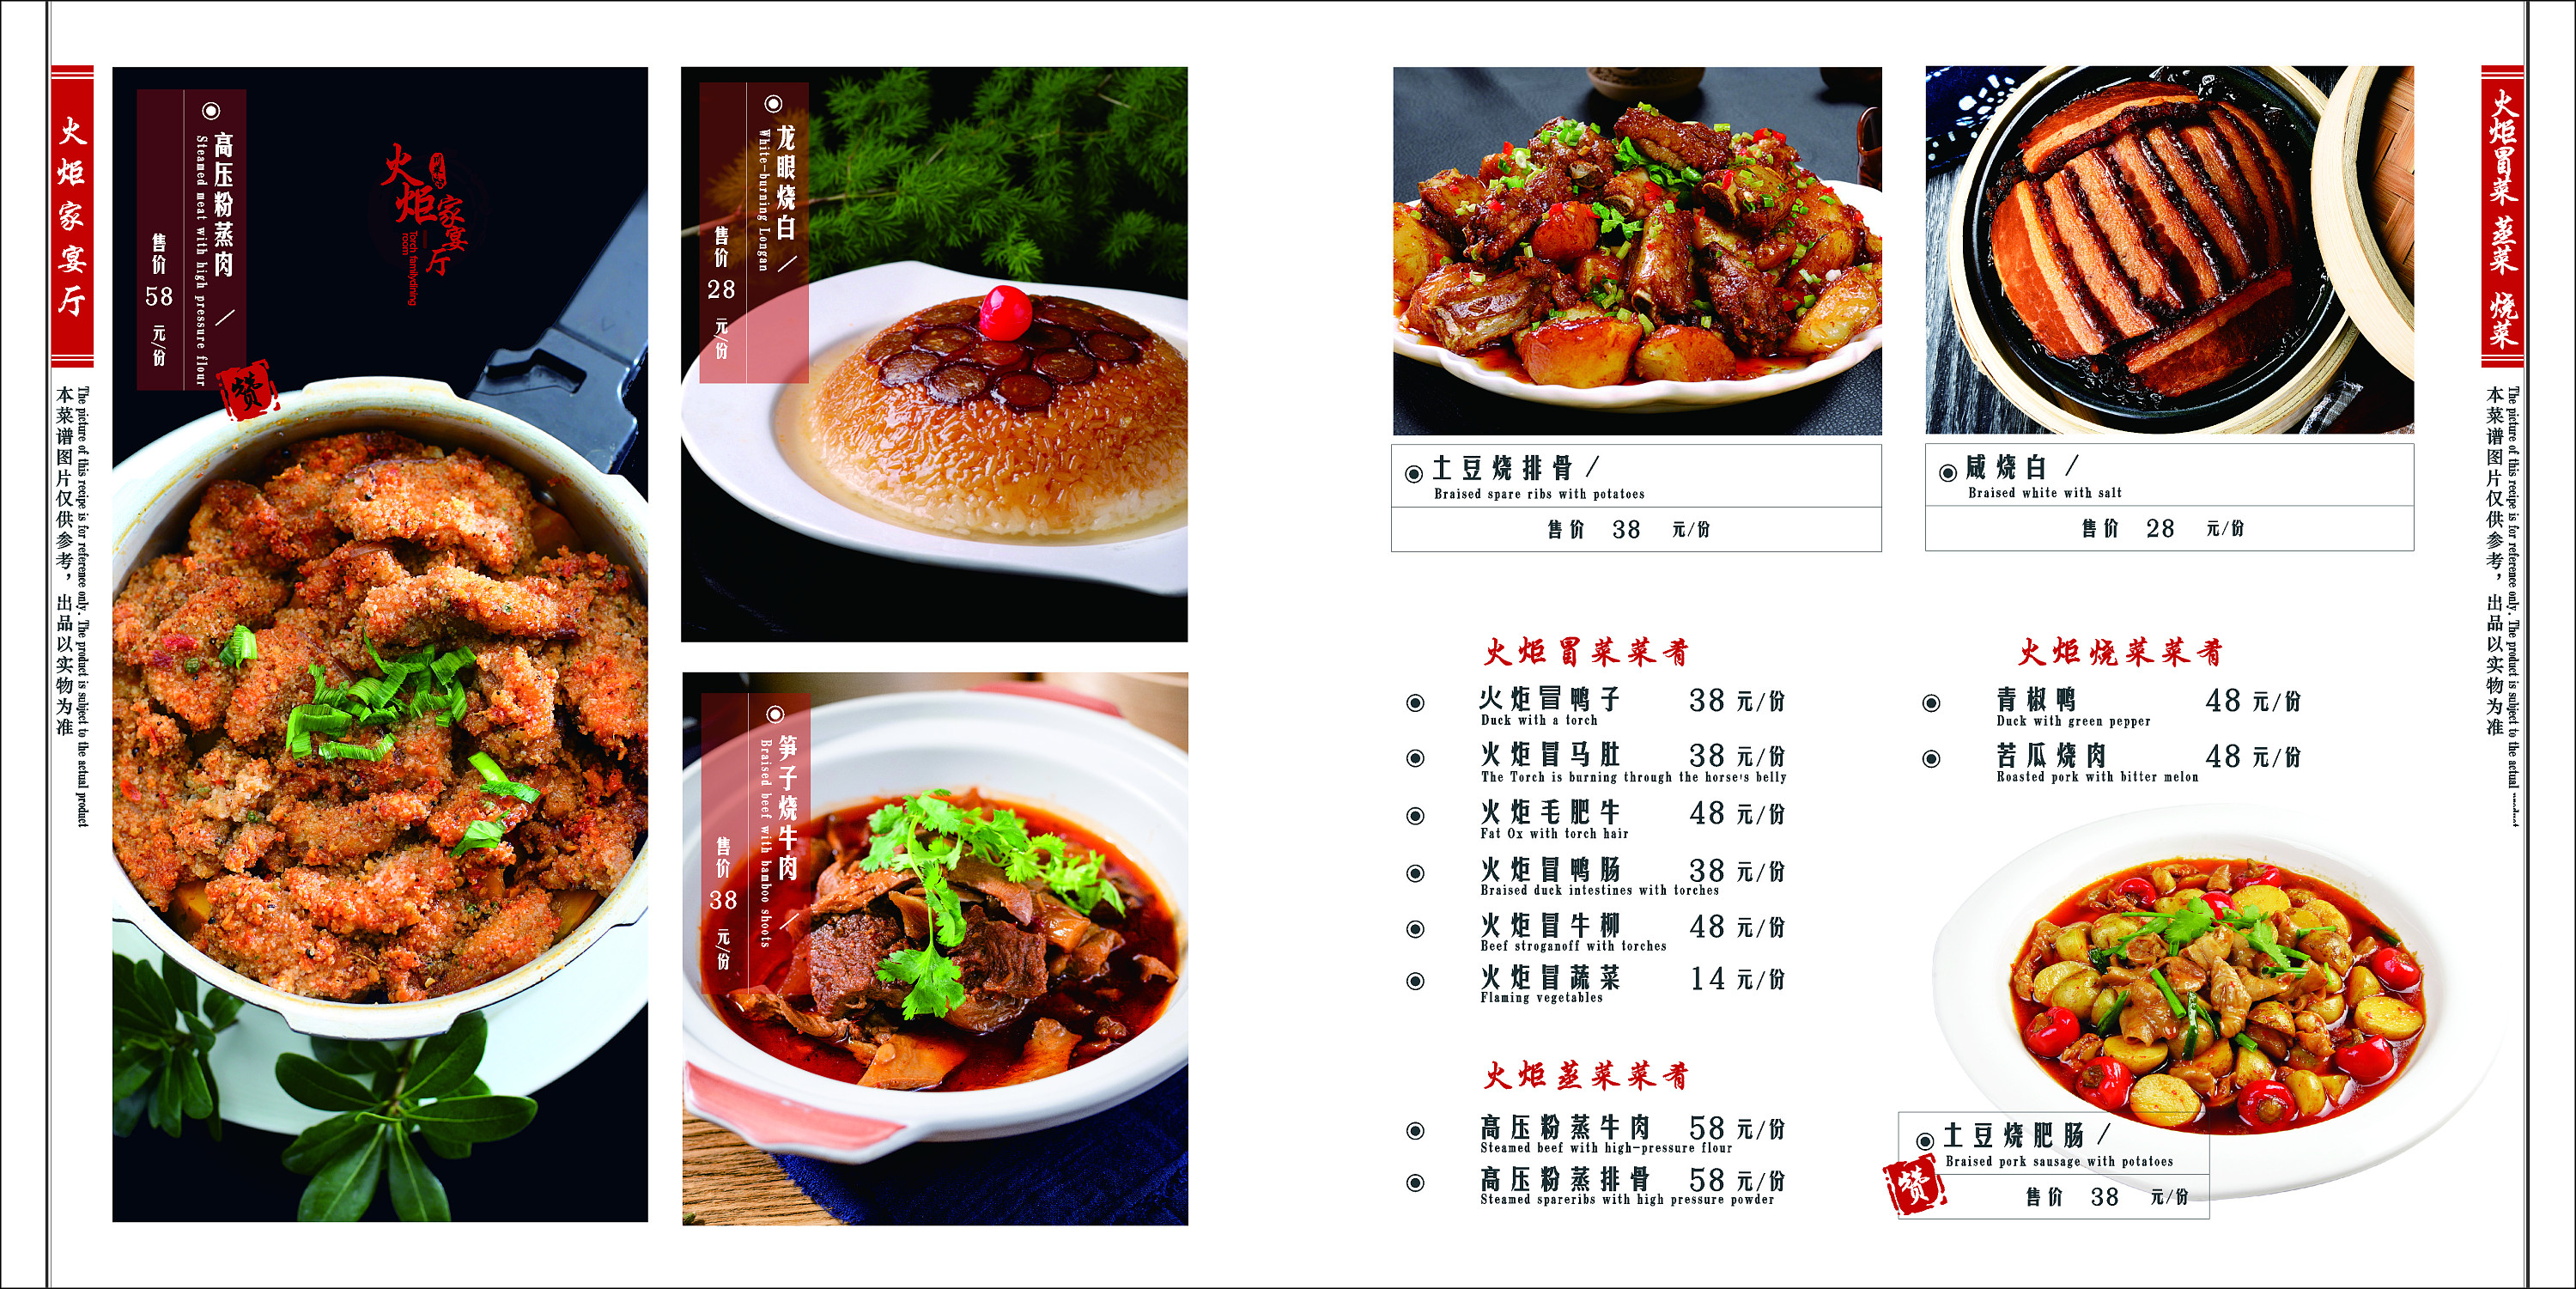 中餐菜谱1000图片